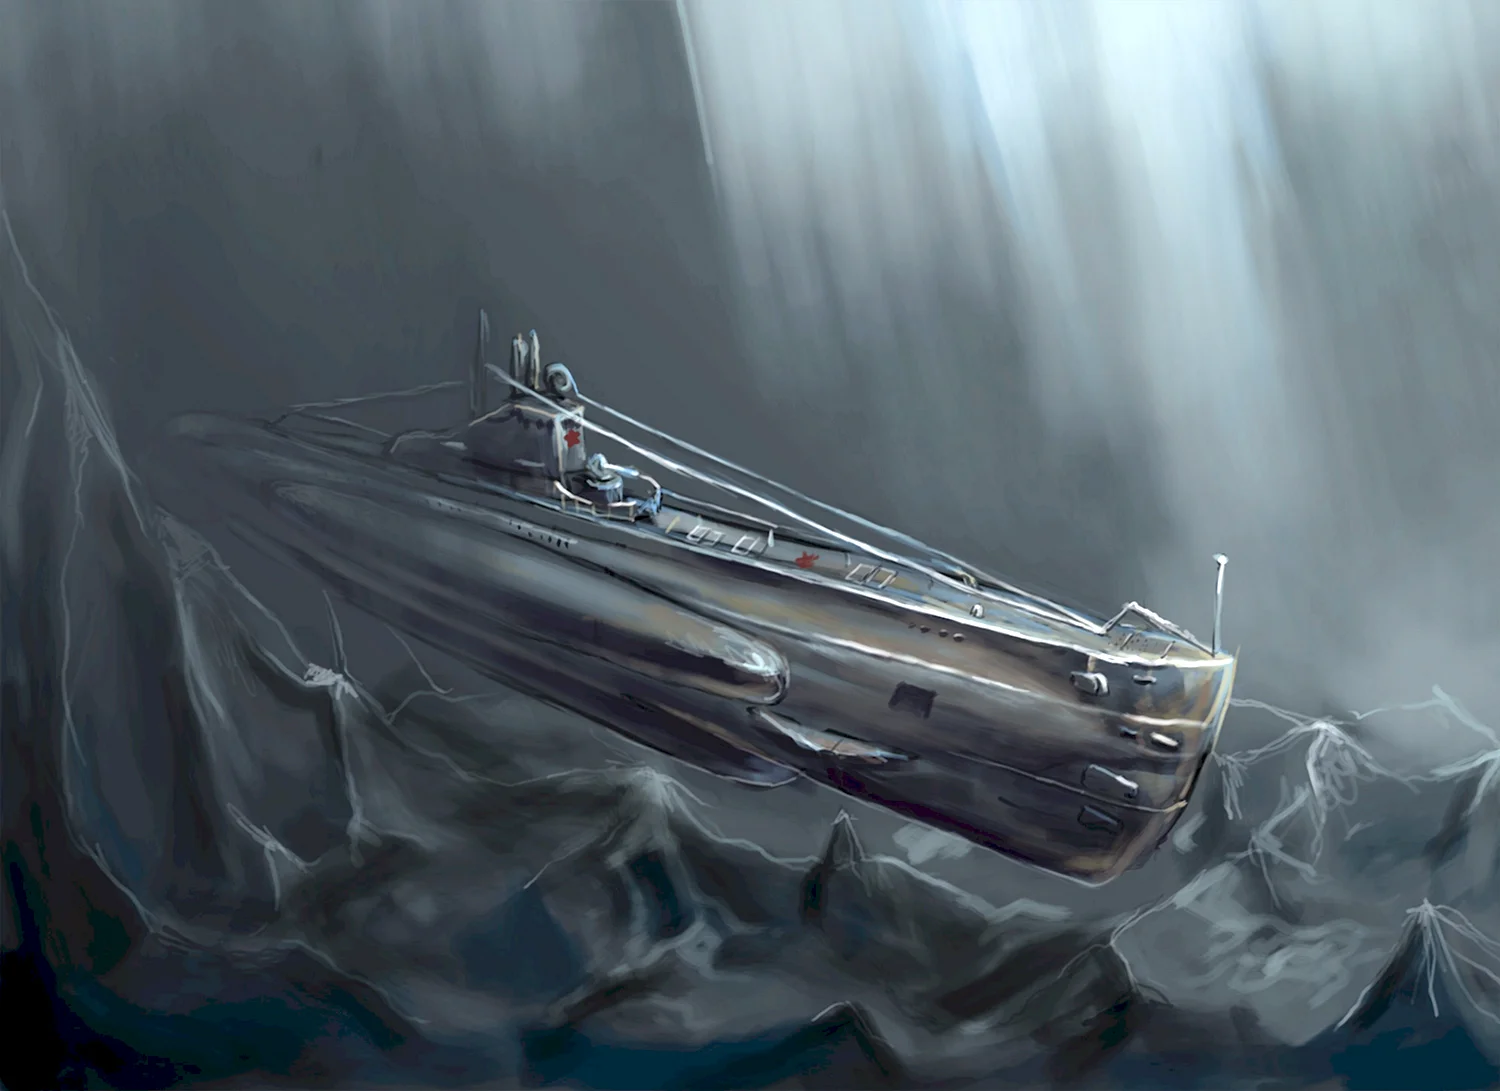 Подводные лодки фэнтези